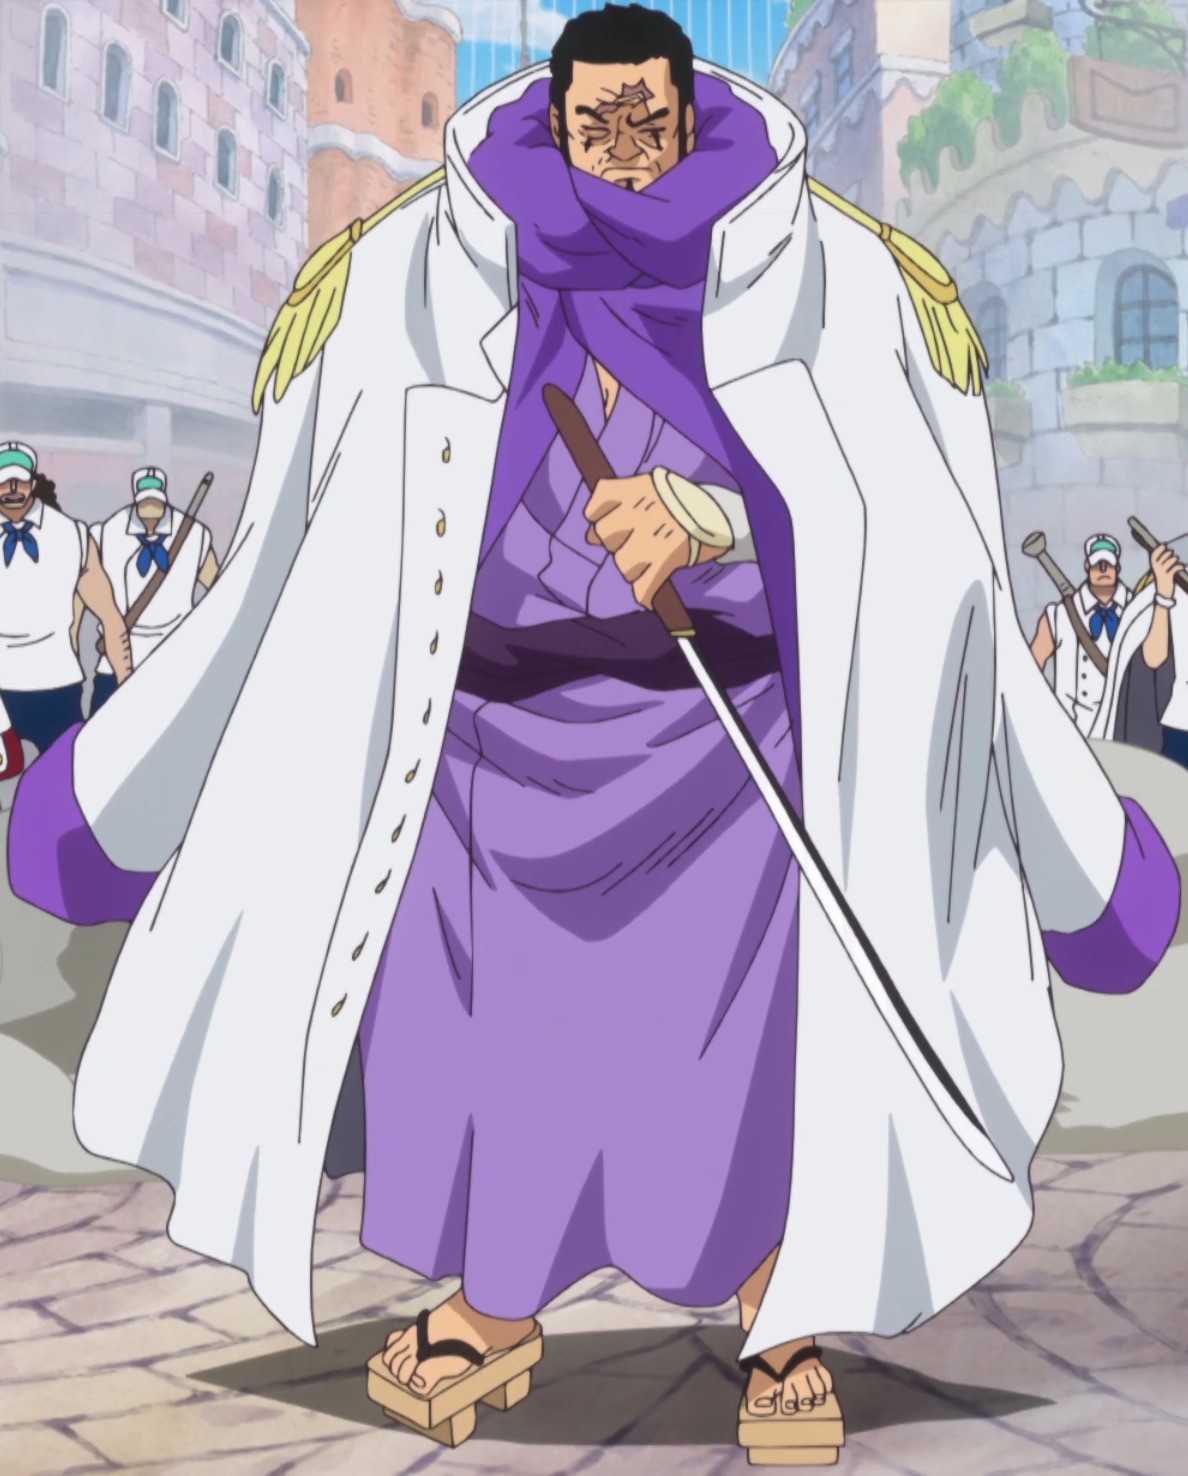 Issho, đây là một hình ảnh được yêu thích của các fan anime One Piece. Cậu ta là một trong những nhân vật tài giỏi và đầy ấn tượng. Hãy chiêm ngưỡng hình ảnh của Issho, một người gác đền trong truyền thuyết, để hiểu sâu hơn về cậu ta và câu chuyện của One Piece.